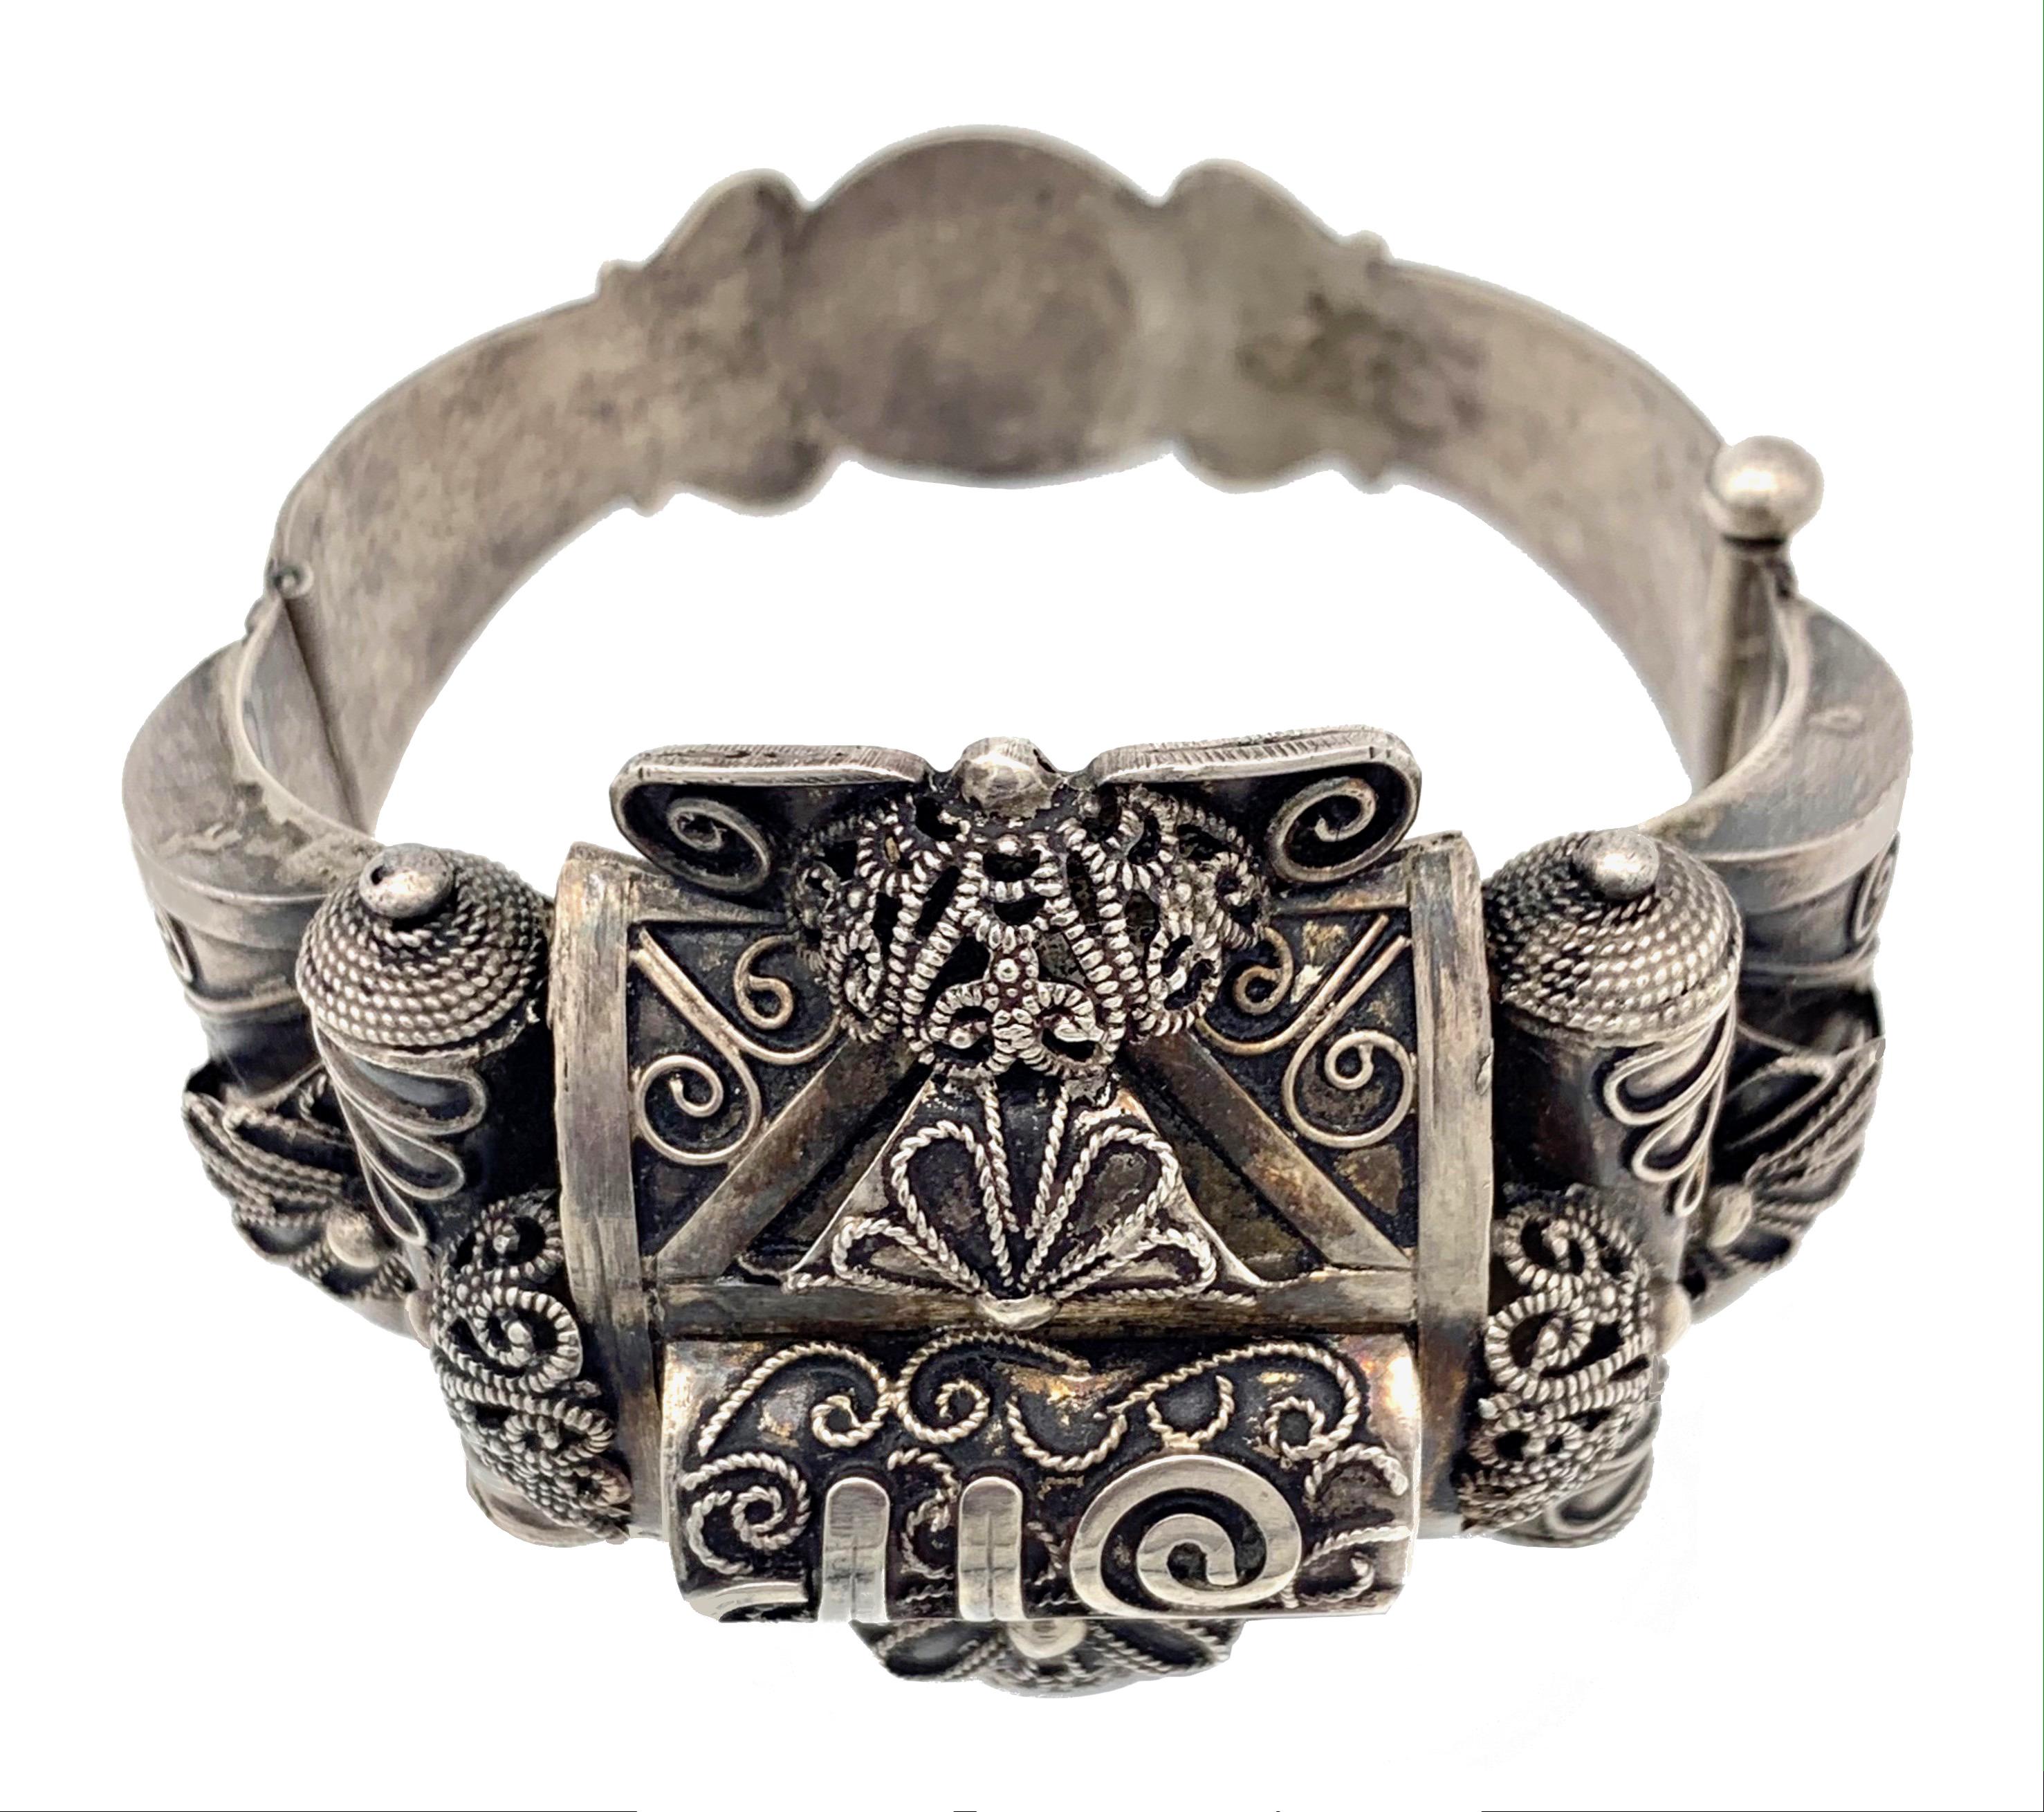 Dieses massive Silberarmband wurde in Nordafrika zu Beginn des 20. Jahrhunderts handgefertigt.
Das Armband ist mit appliziertem, gedrehtem Silberdraht verziert. 